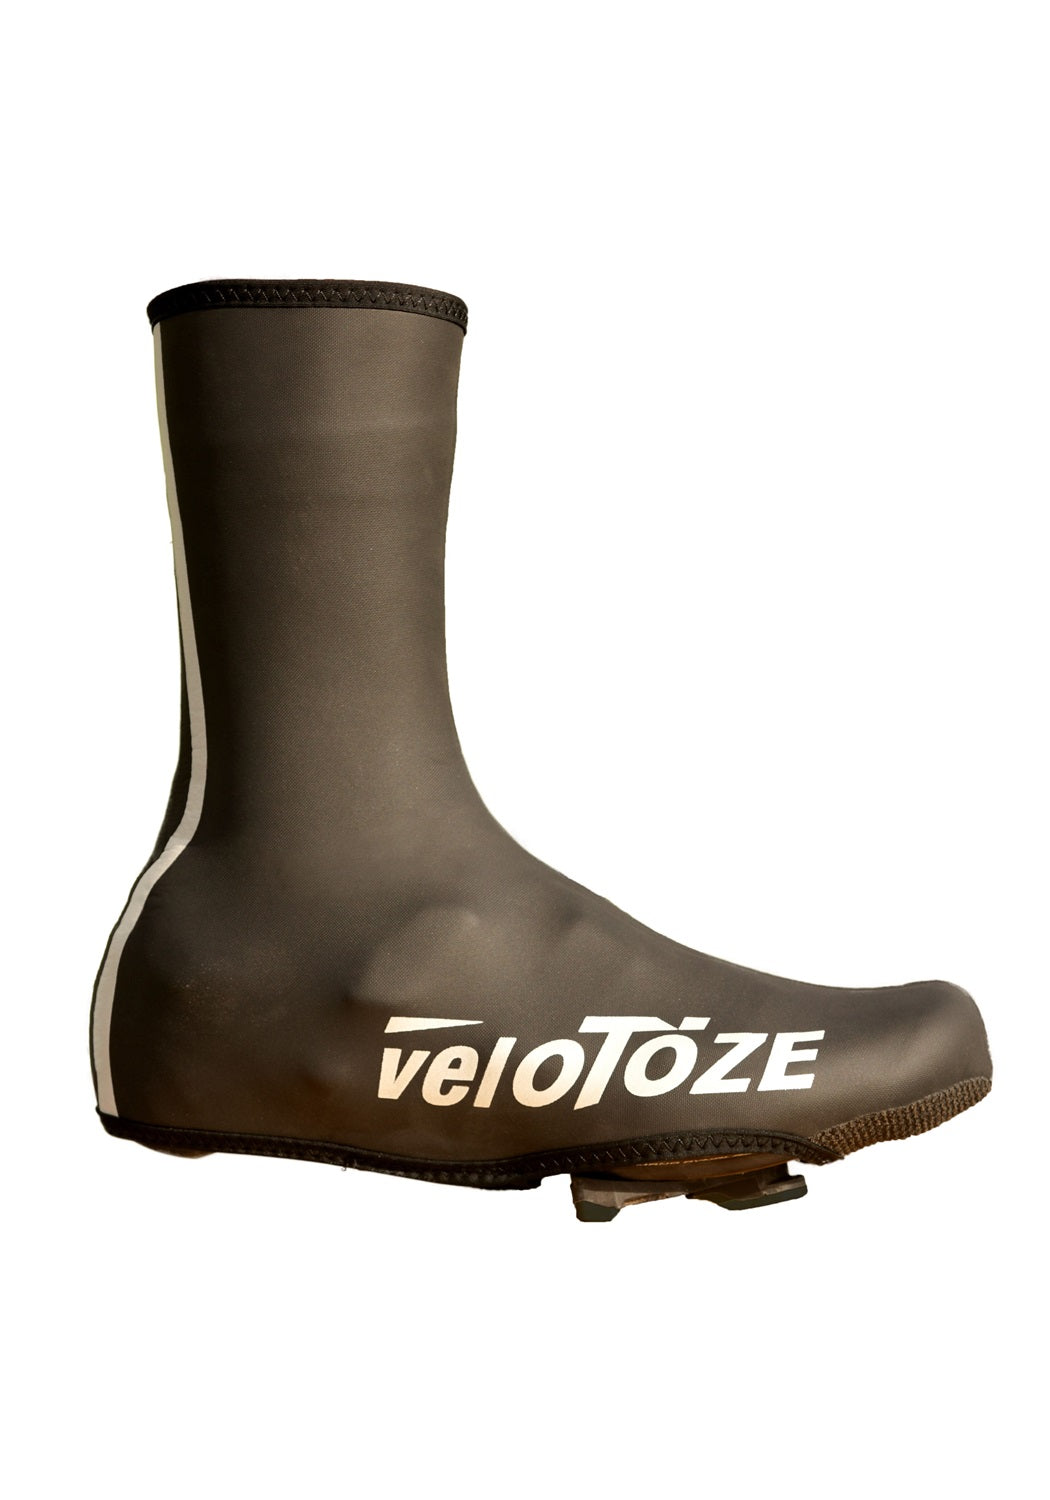 veloToze Neoprene Shoe Covers (Waterproof Cuffs Included)